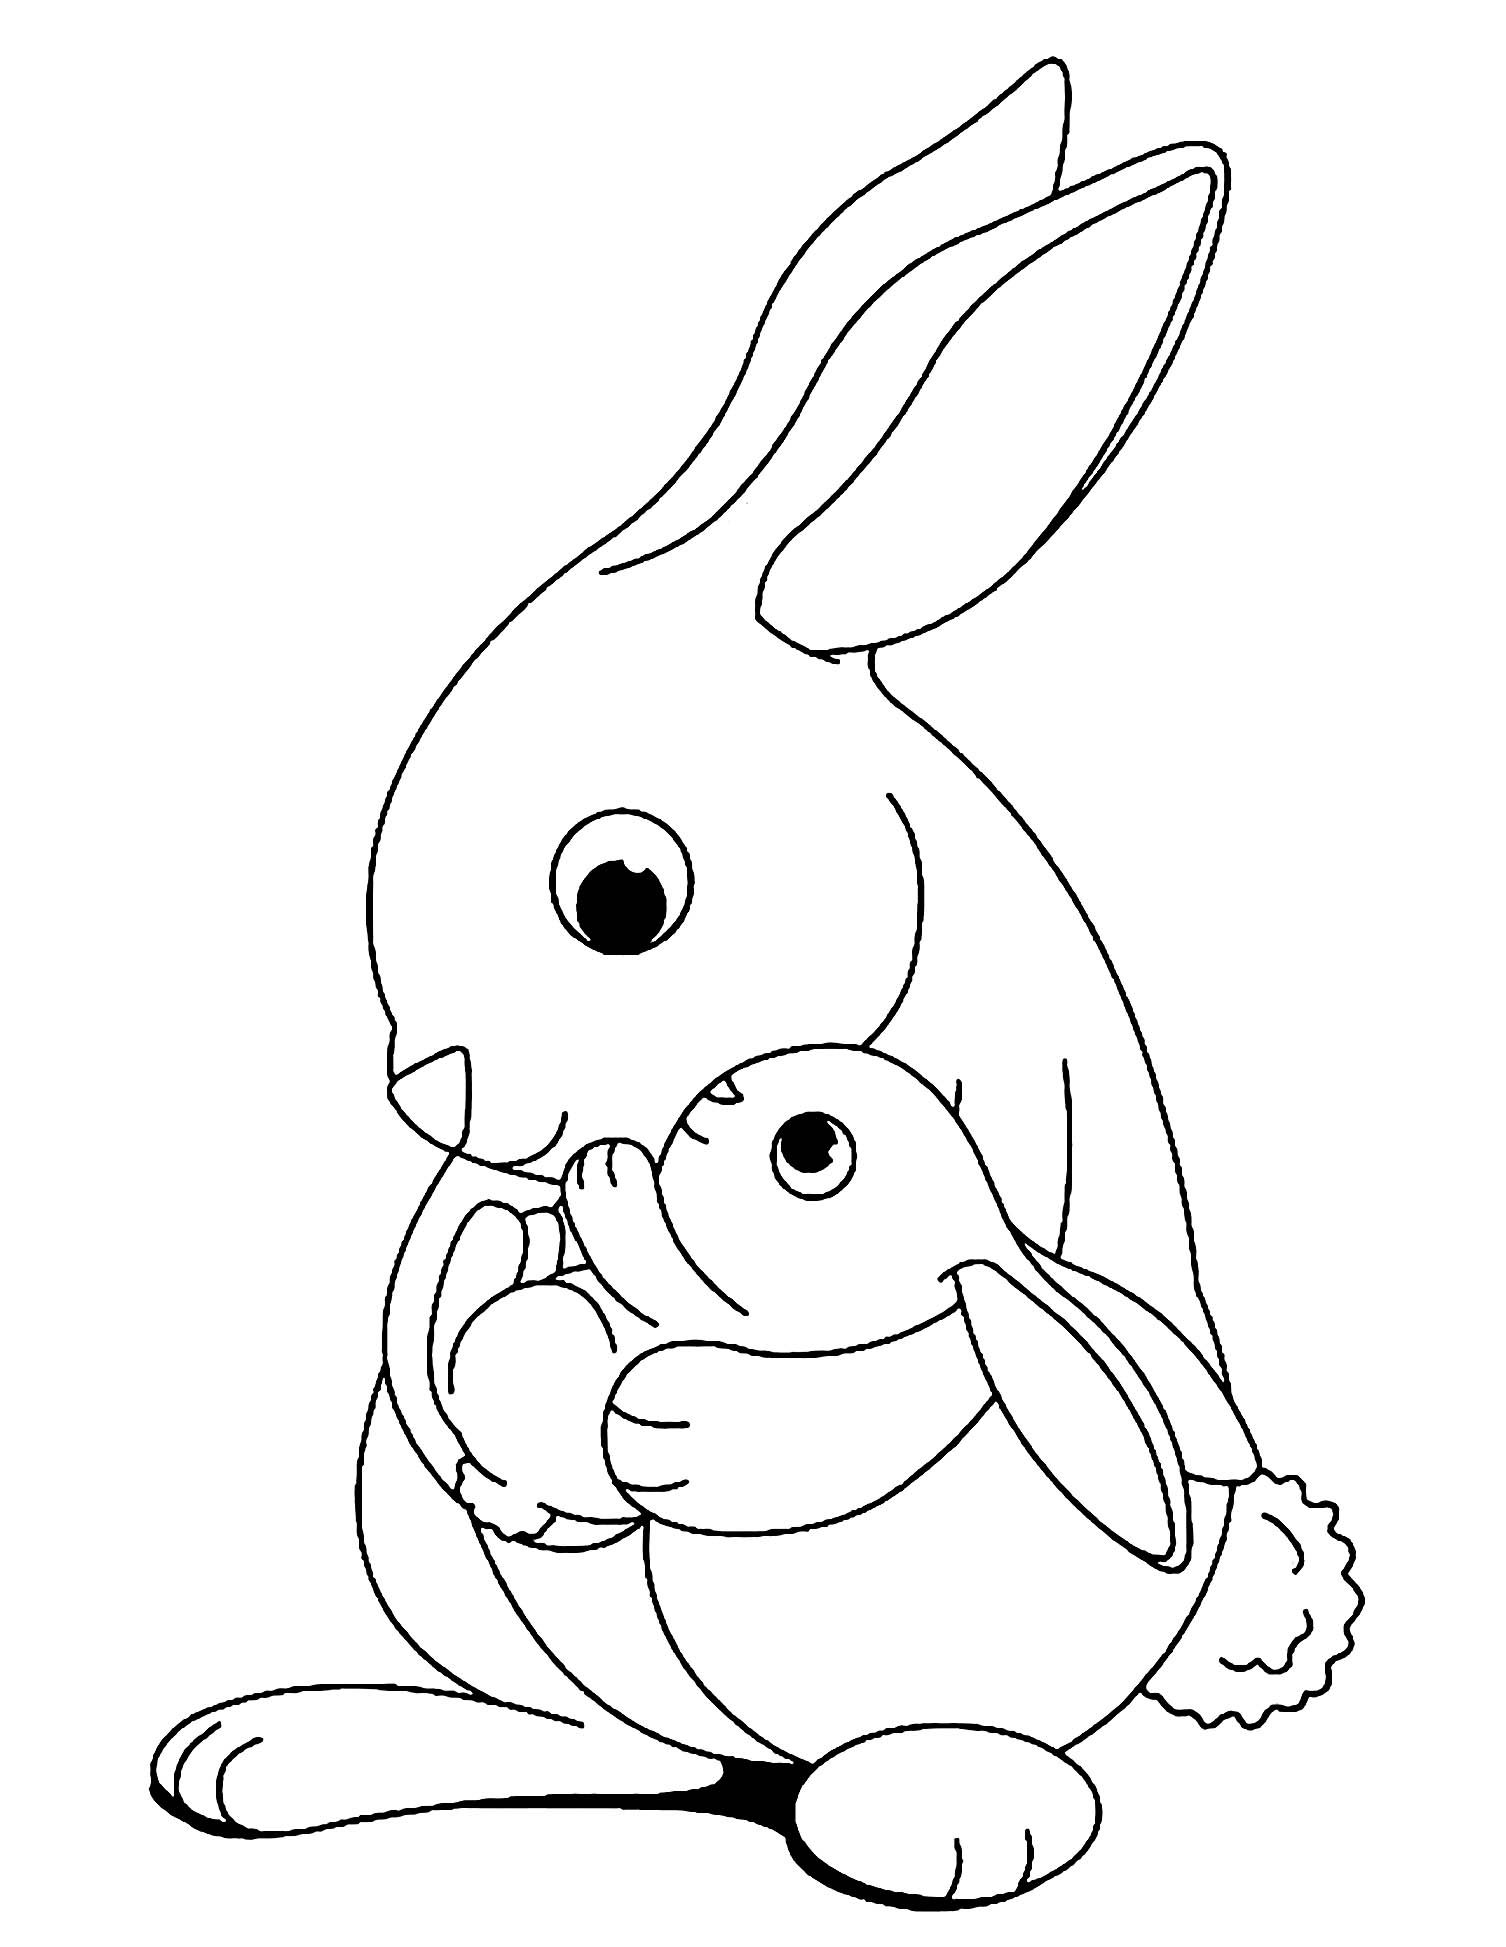 Tranh tô màu thỏ mẹ và thỏ con dễ thương cùng nhau